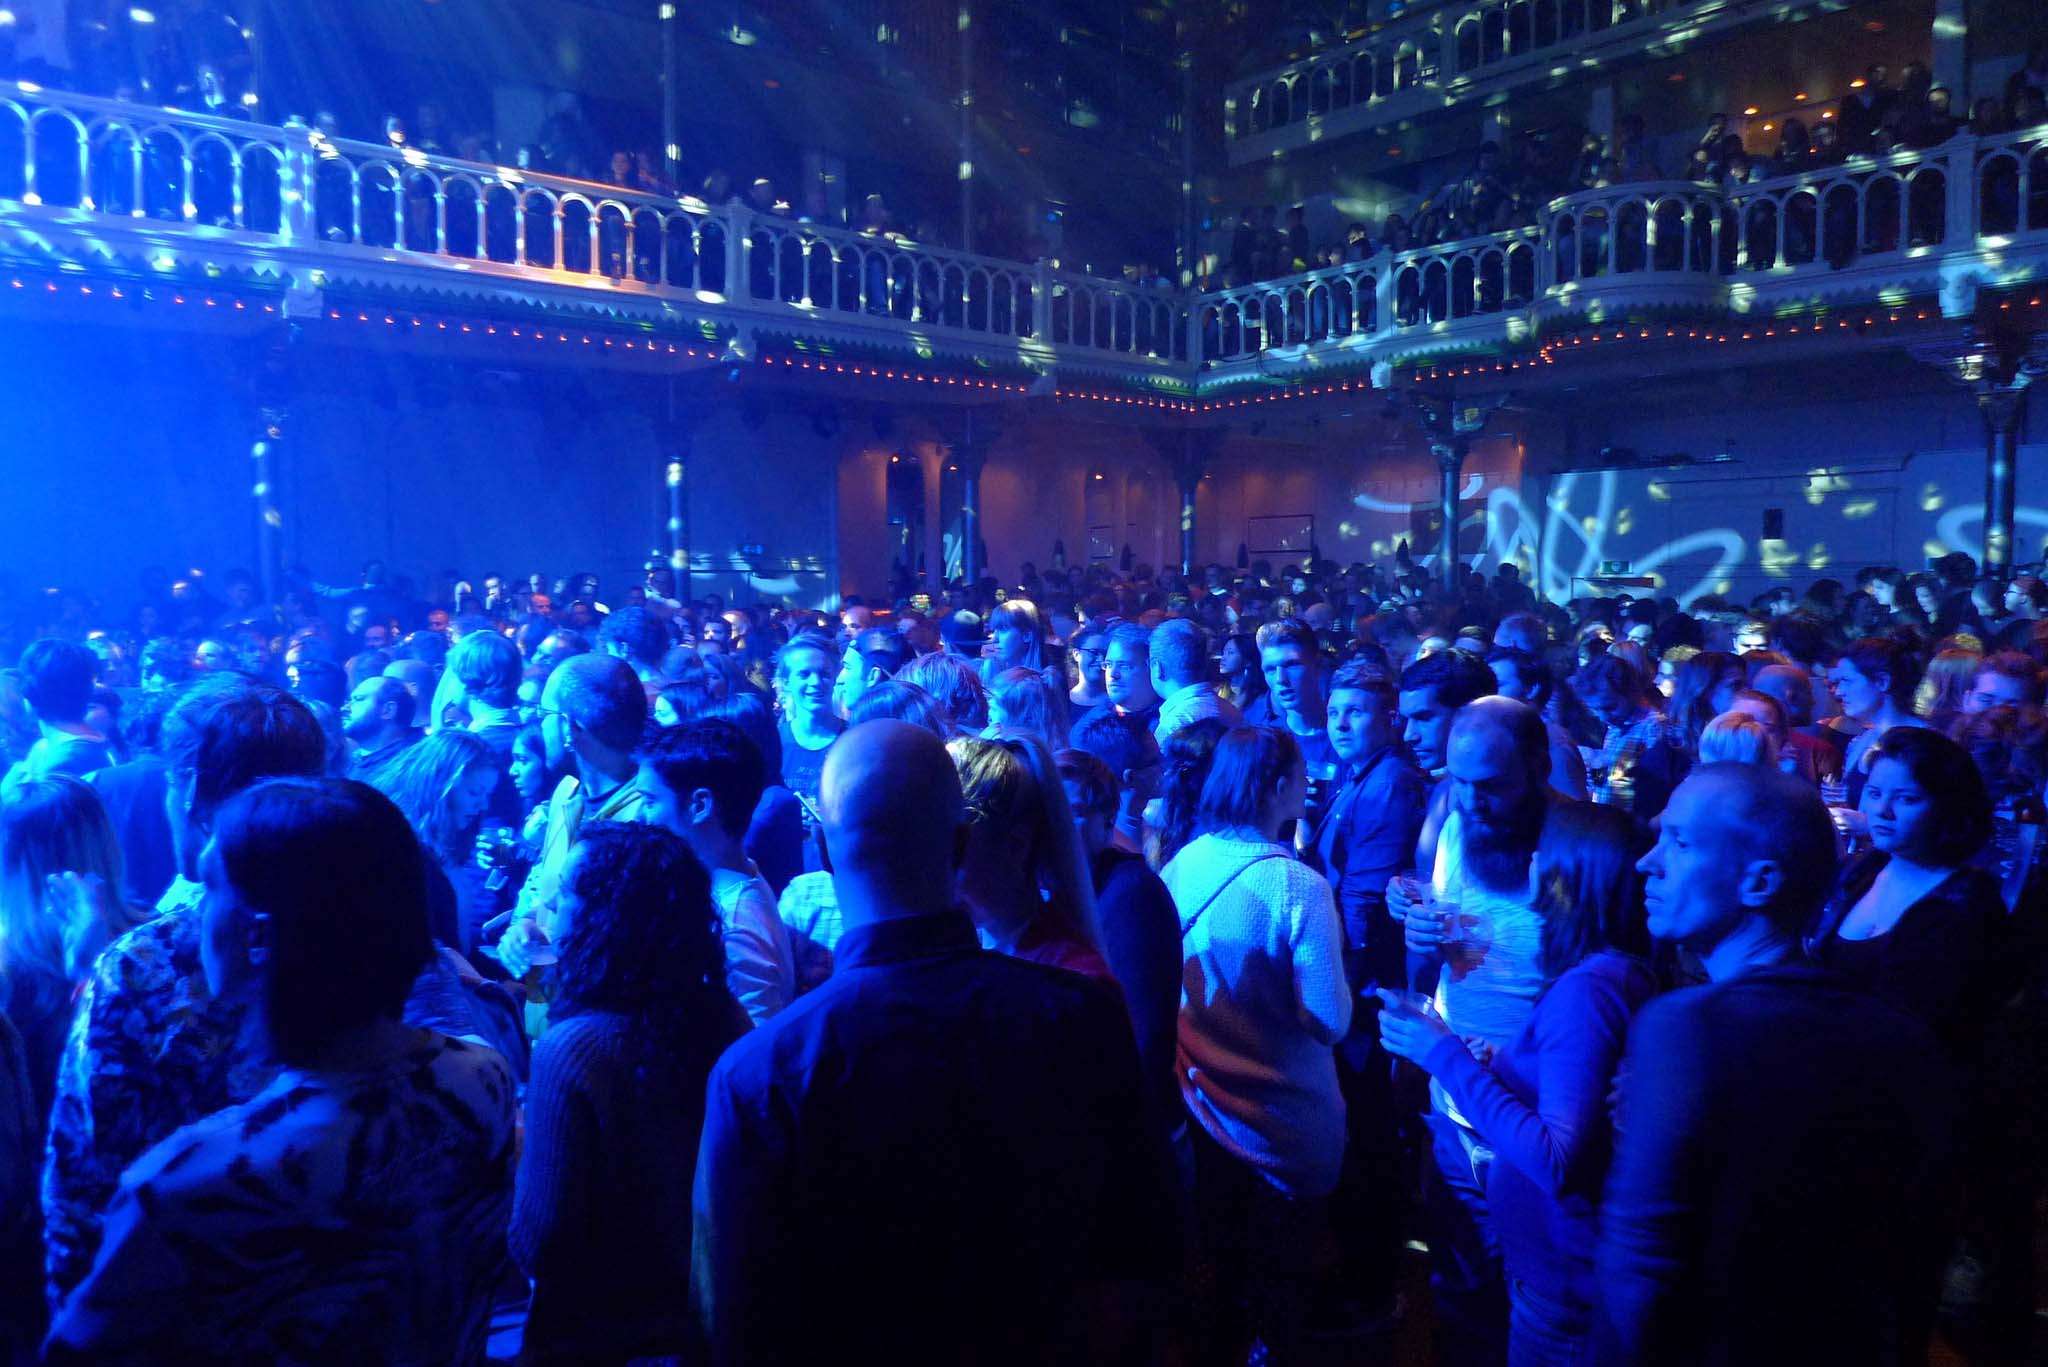 Covid-19: Πειραματικό πάρτι στο Άμστερνταμ με 1300 άτομα